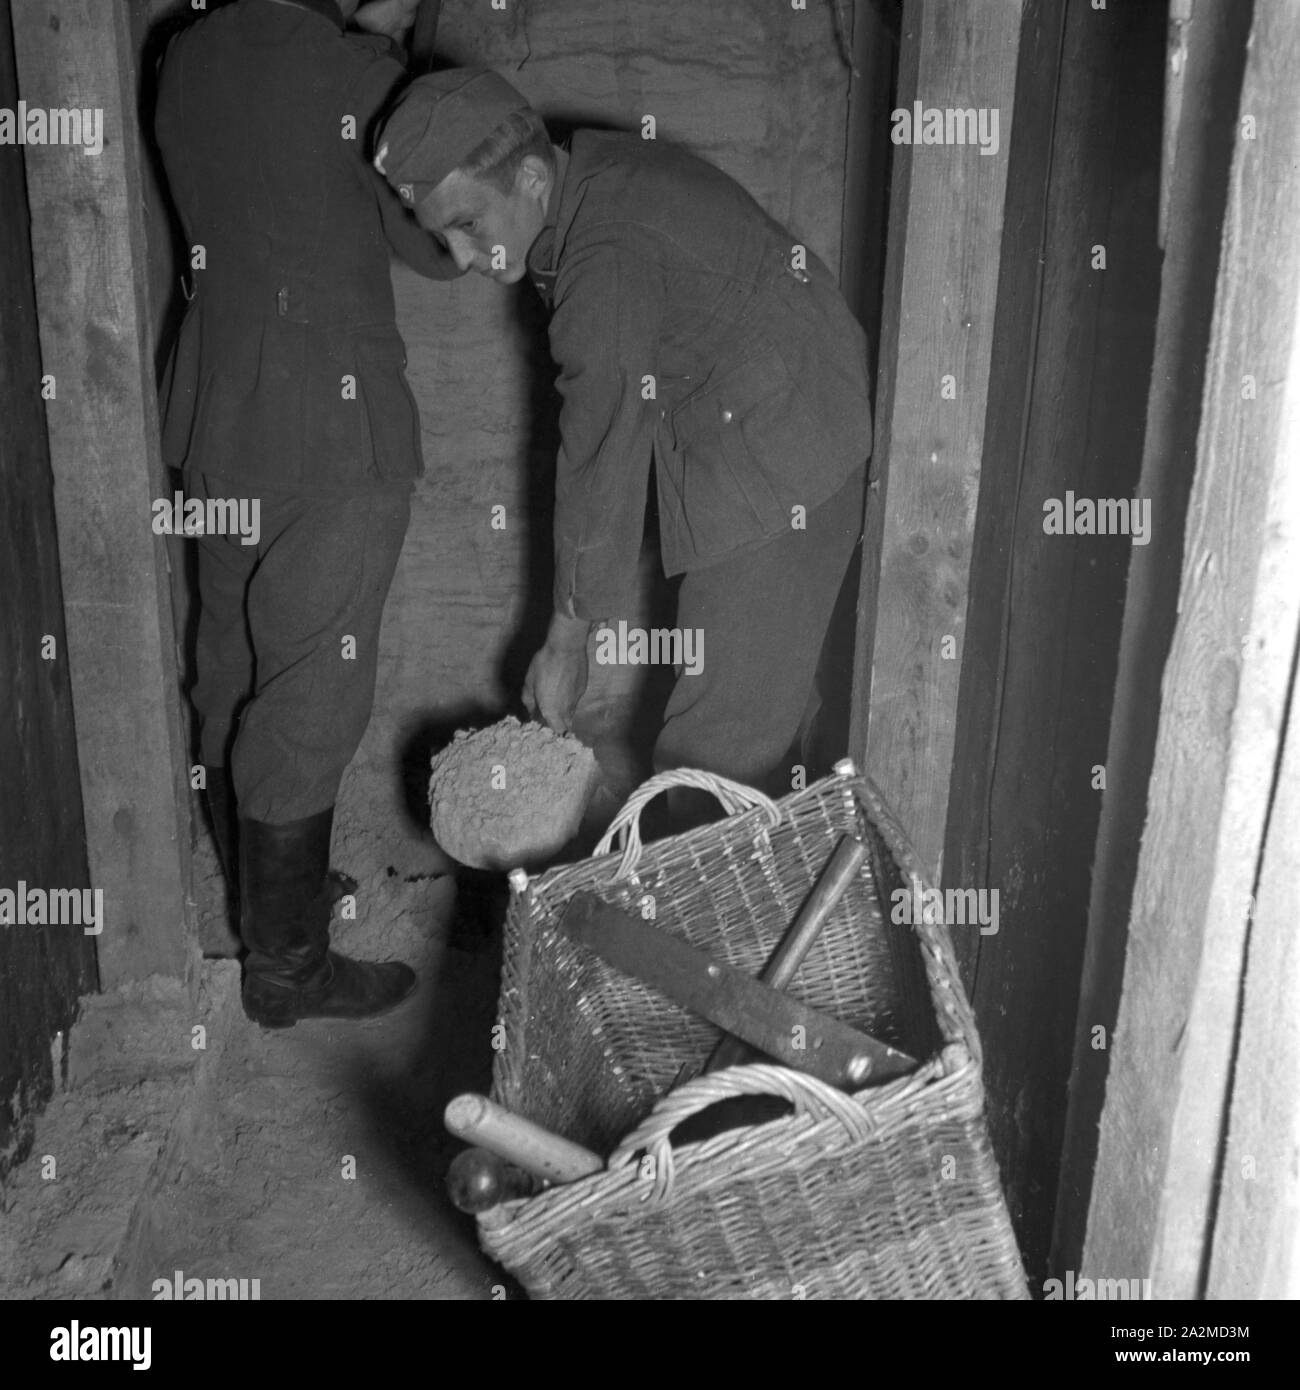 Original-Bildunterschrift: Pionier in einem unterirdischen Stollen beim Minieren, Deutschland 1940er Jahre. Soldiers of military engineering mining in a subterranean tunnel, Germany 1940s. Stock Photo